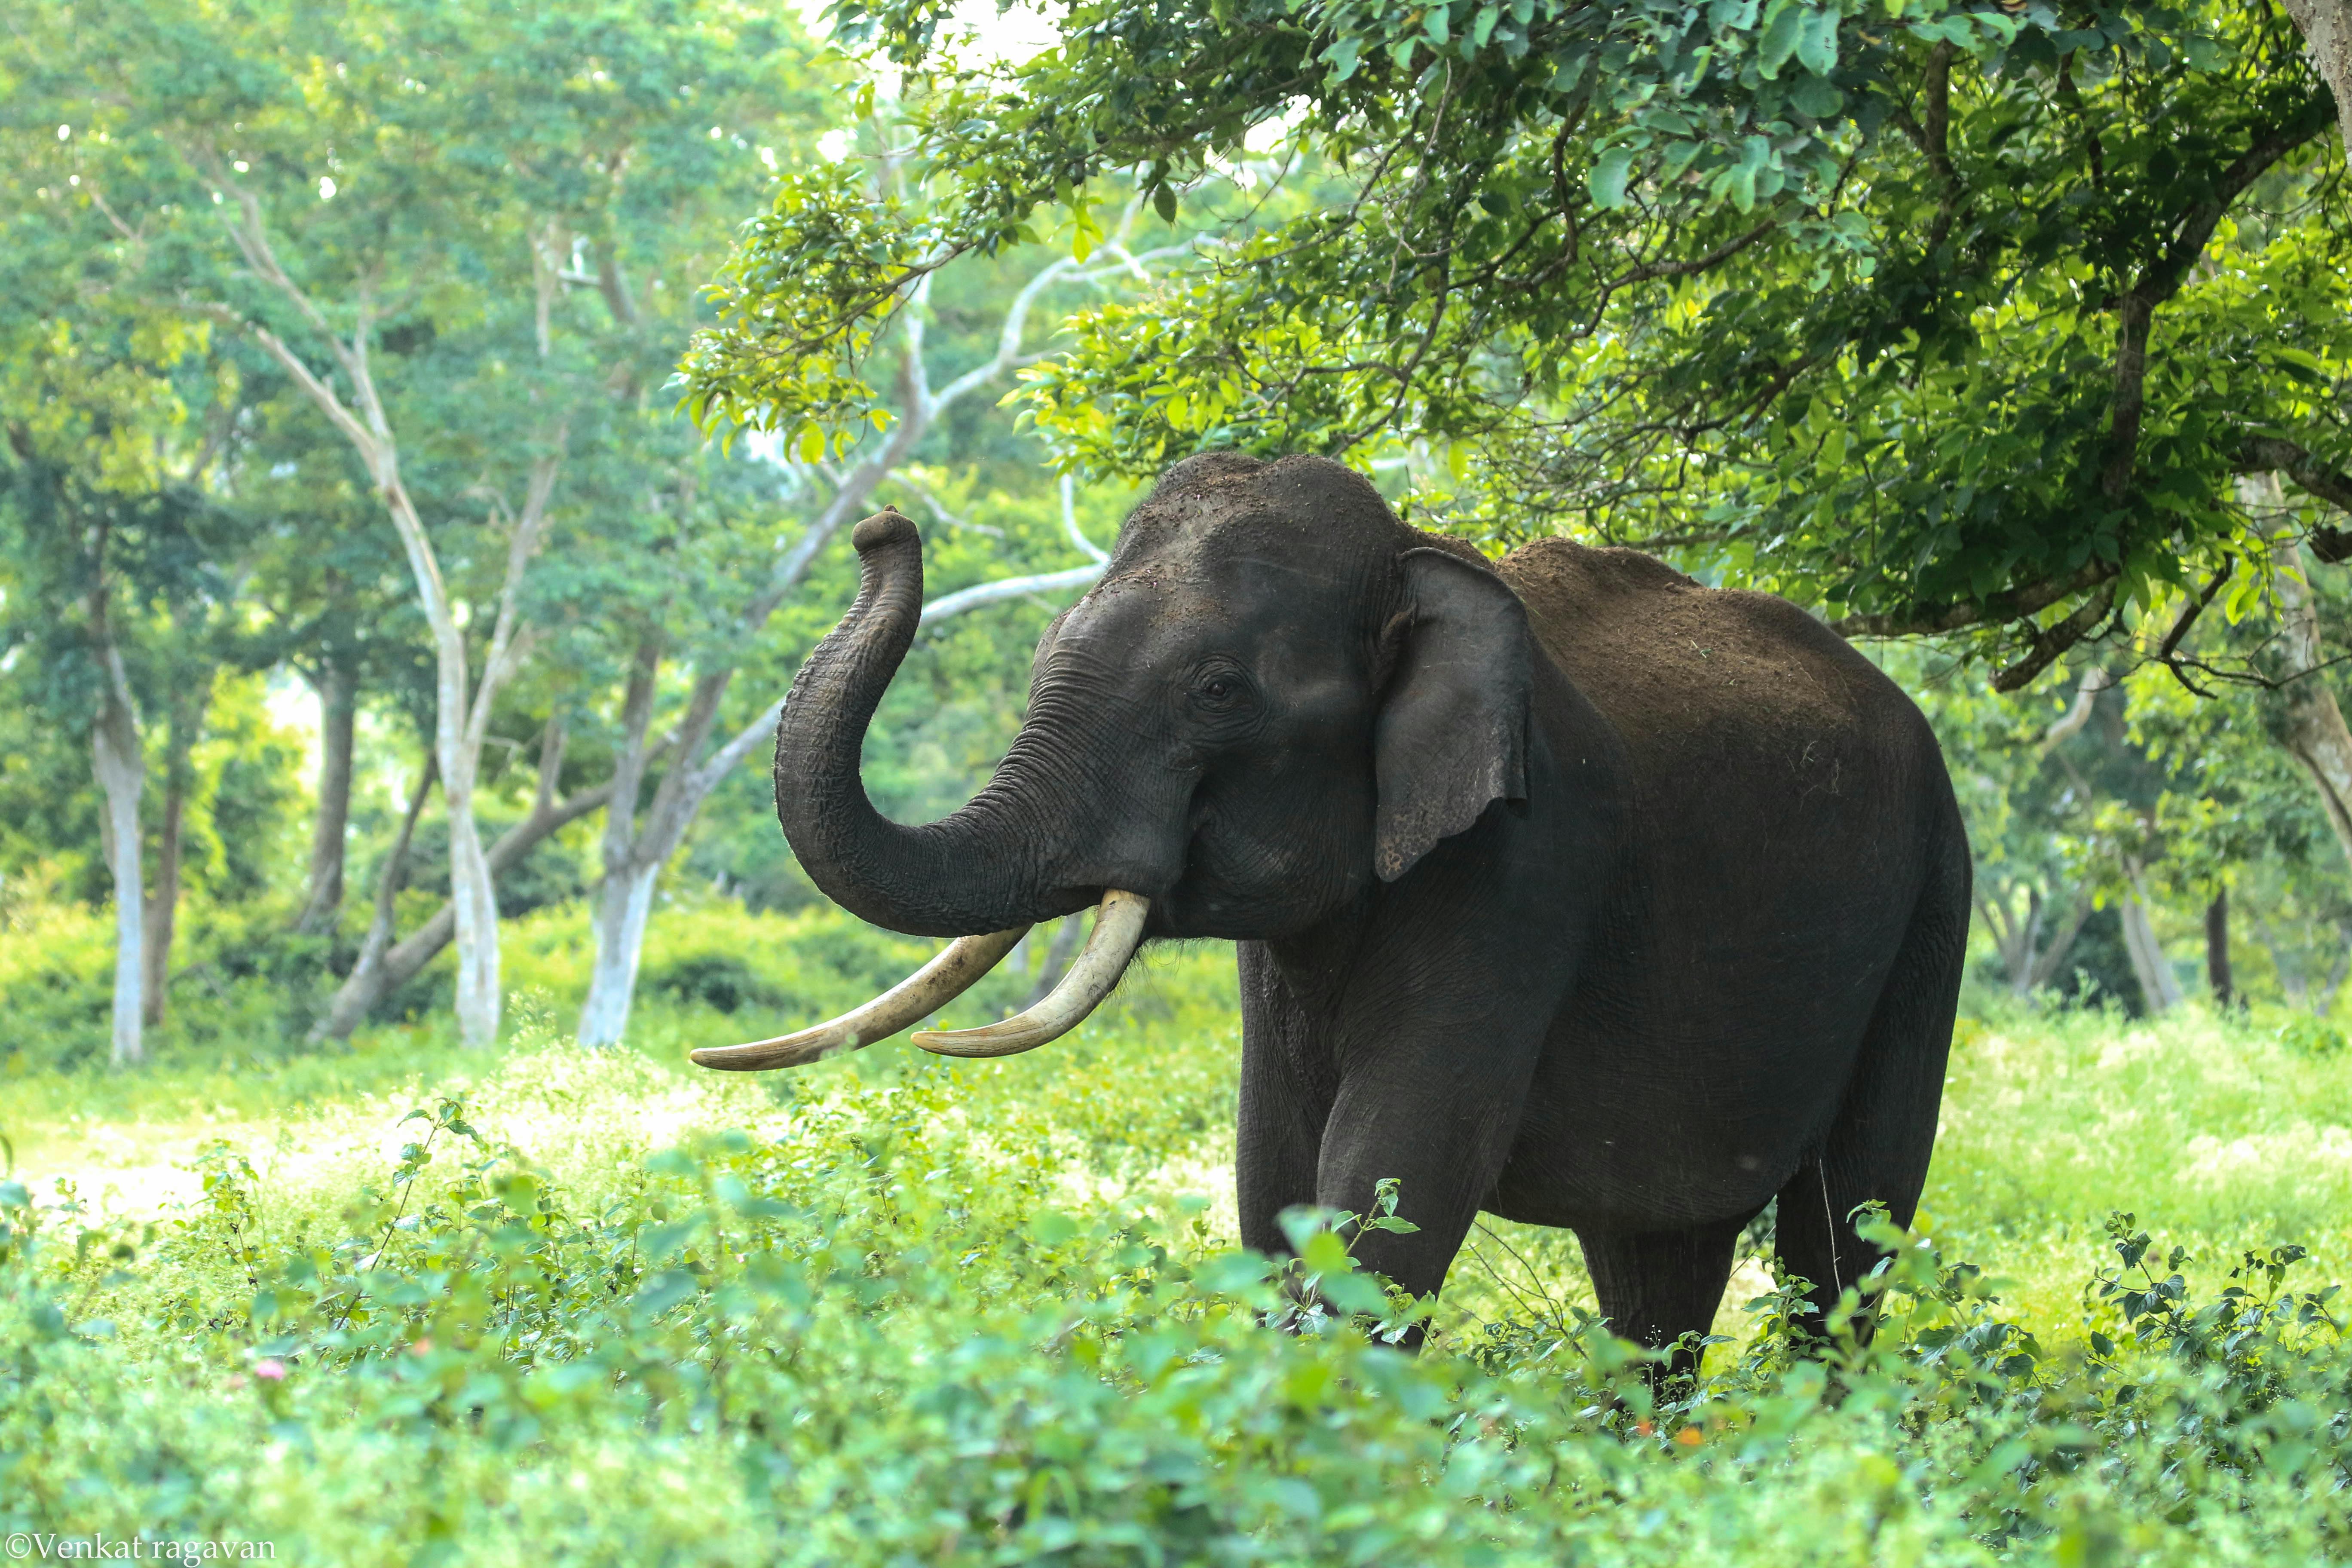 Elephant Forest Big Elephant Hathi Elephant Stock Photo 1476582443   Shutterstock